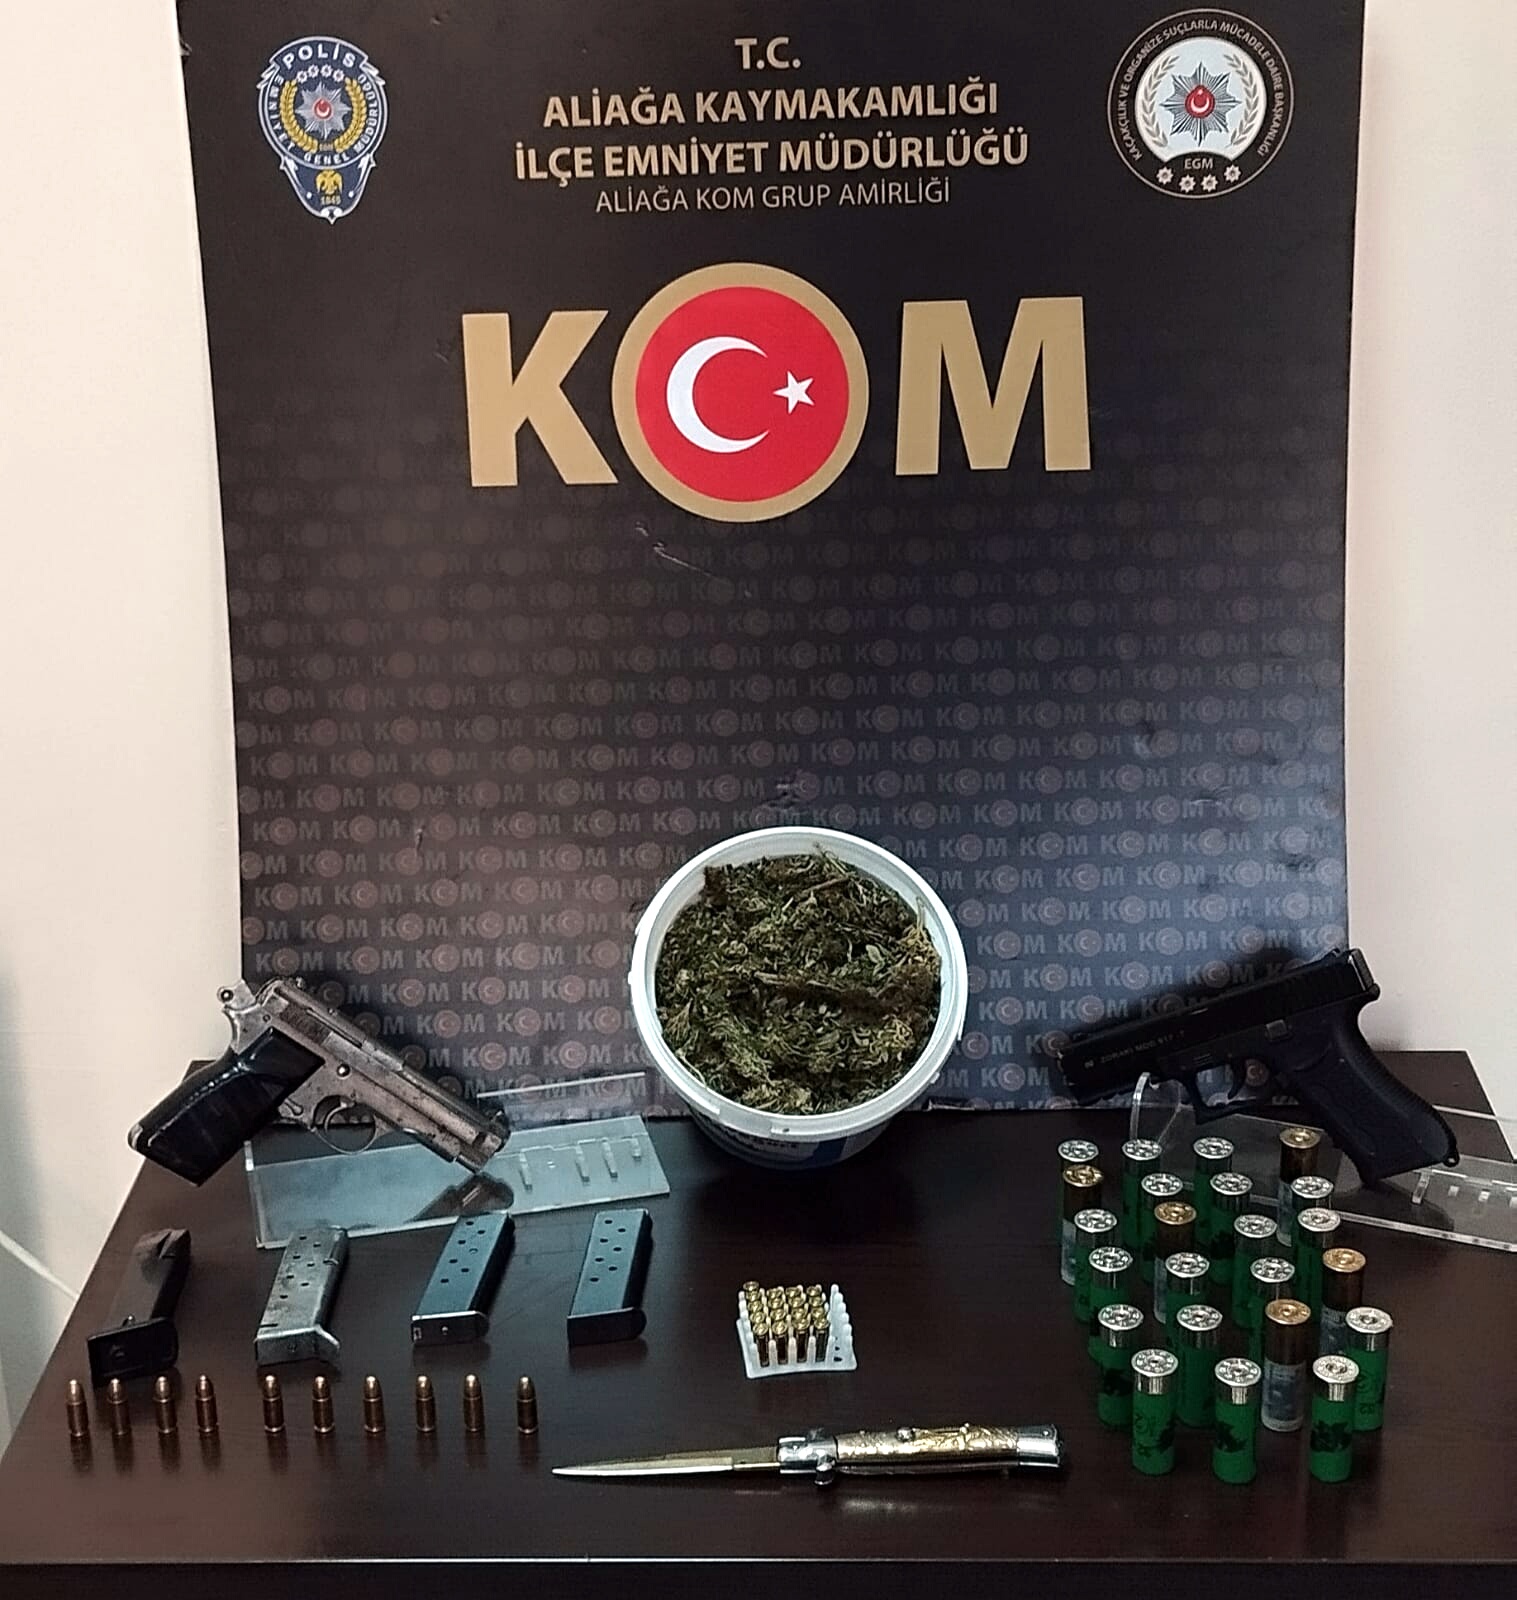 İzmir ilinde gerçekleştirilen operasyon sonucunda, silah kaçakçılığı suçlamasıyla 8 kişi gözaltına alındı.